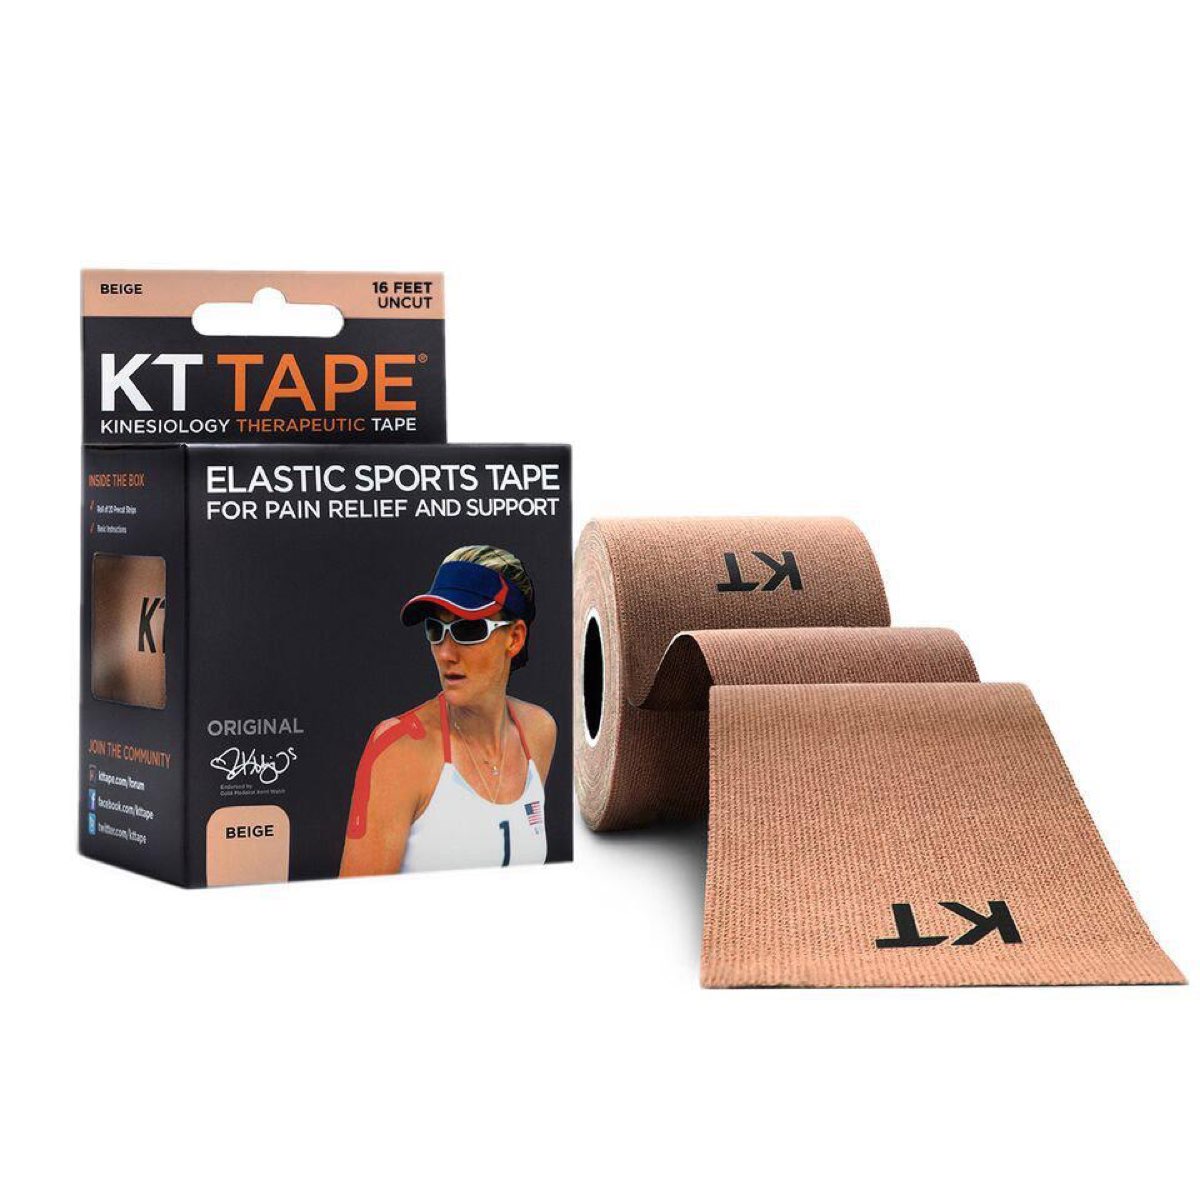 KT Tape Original Cotton Uncut